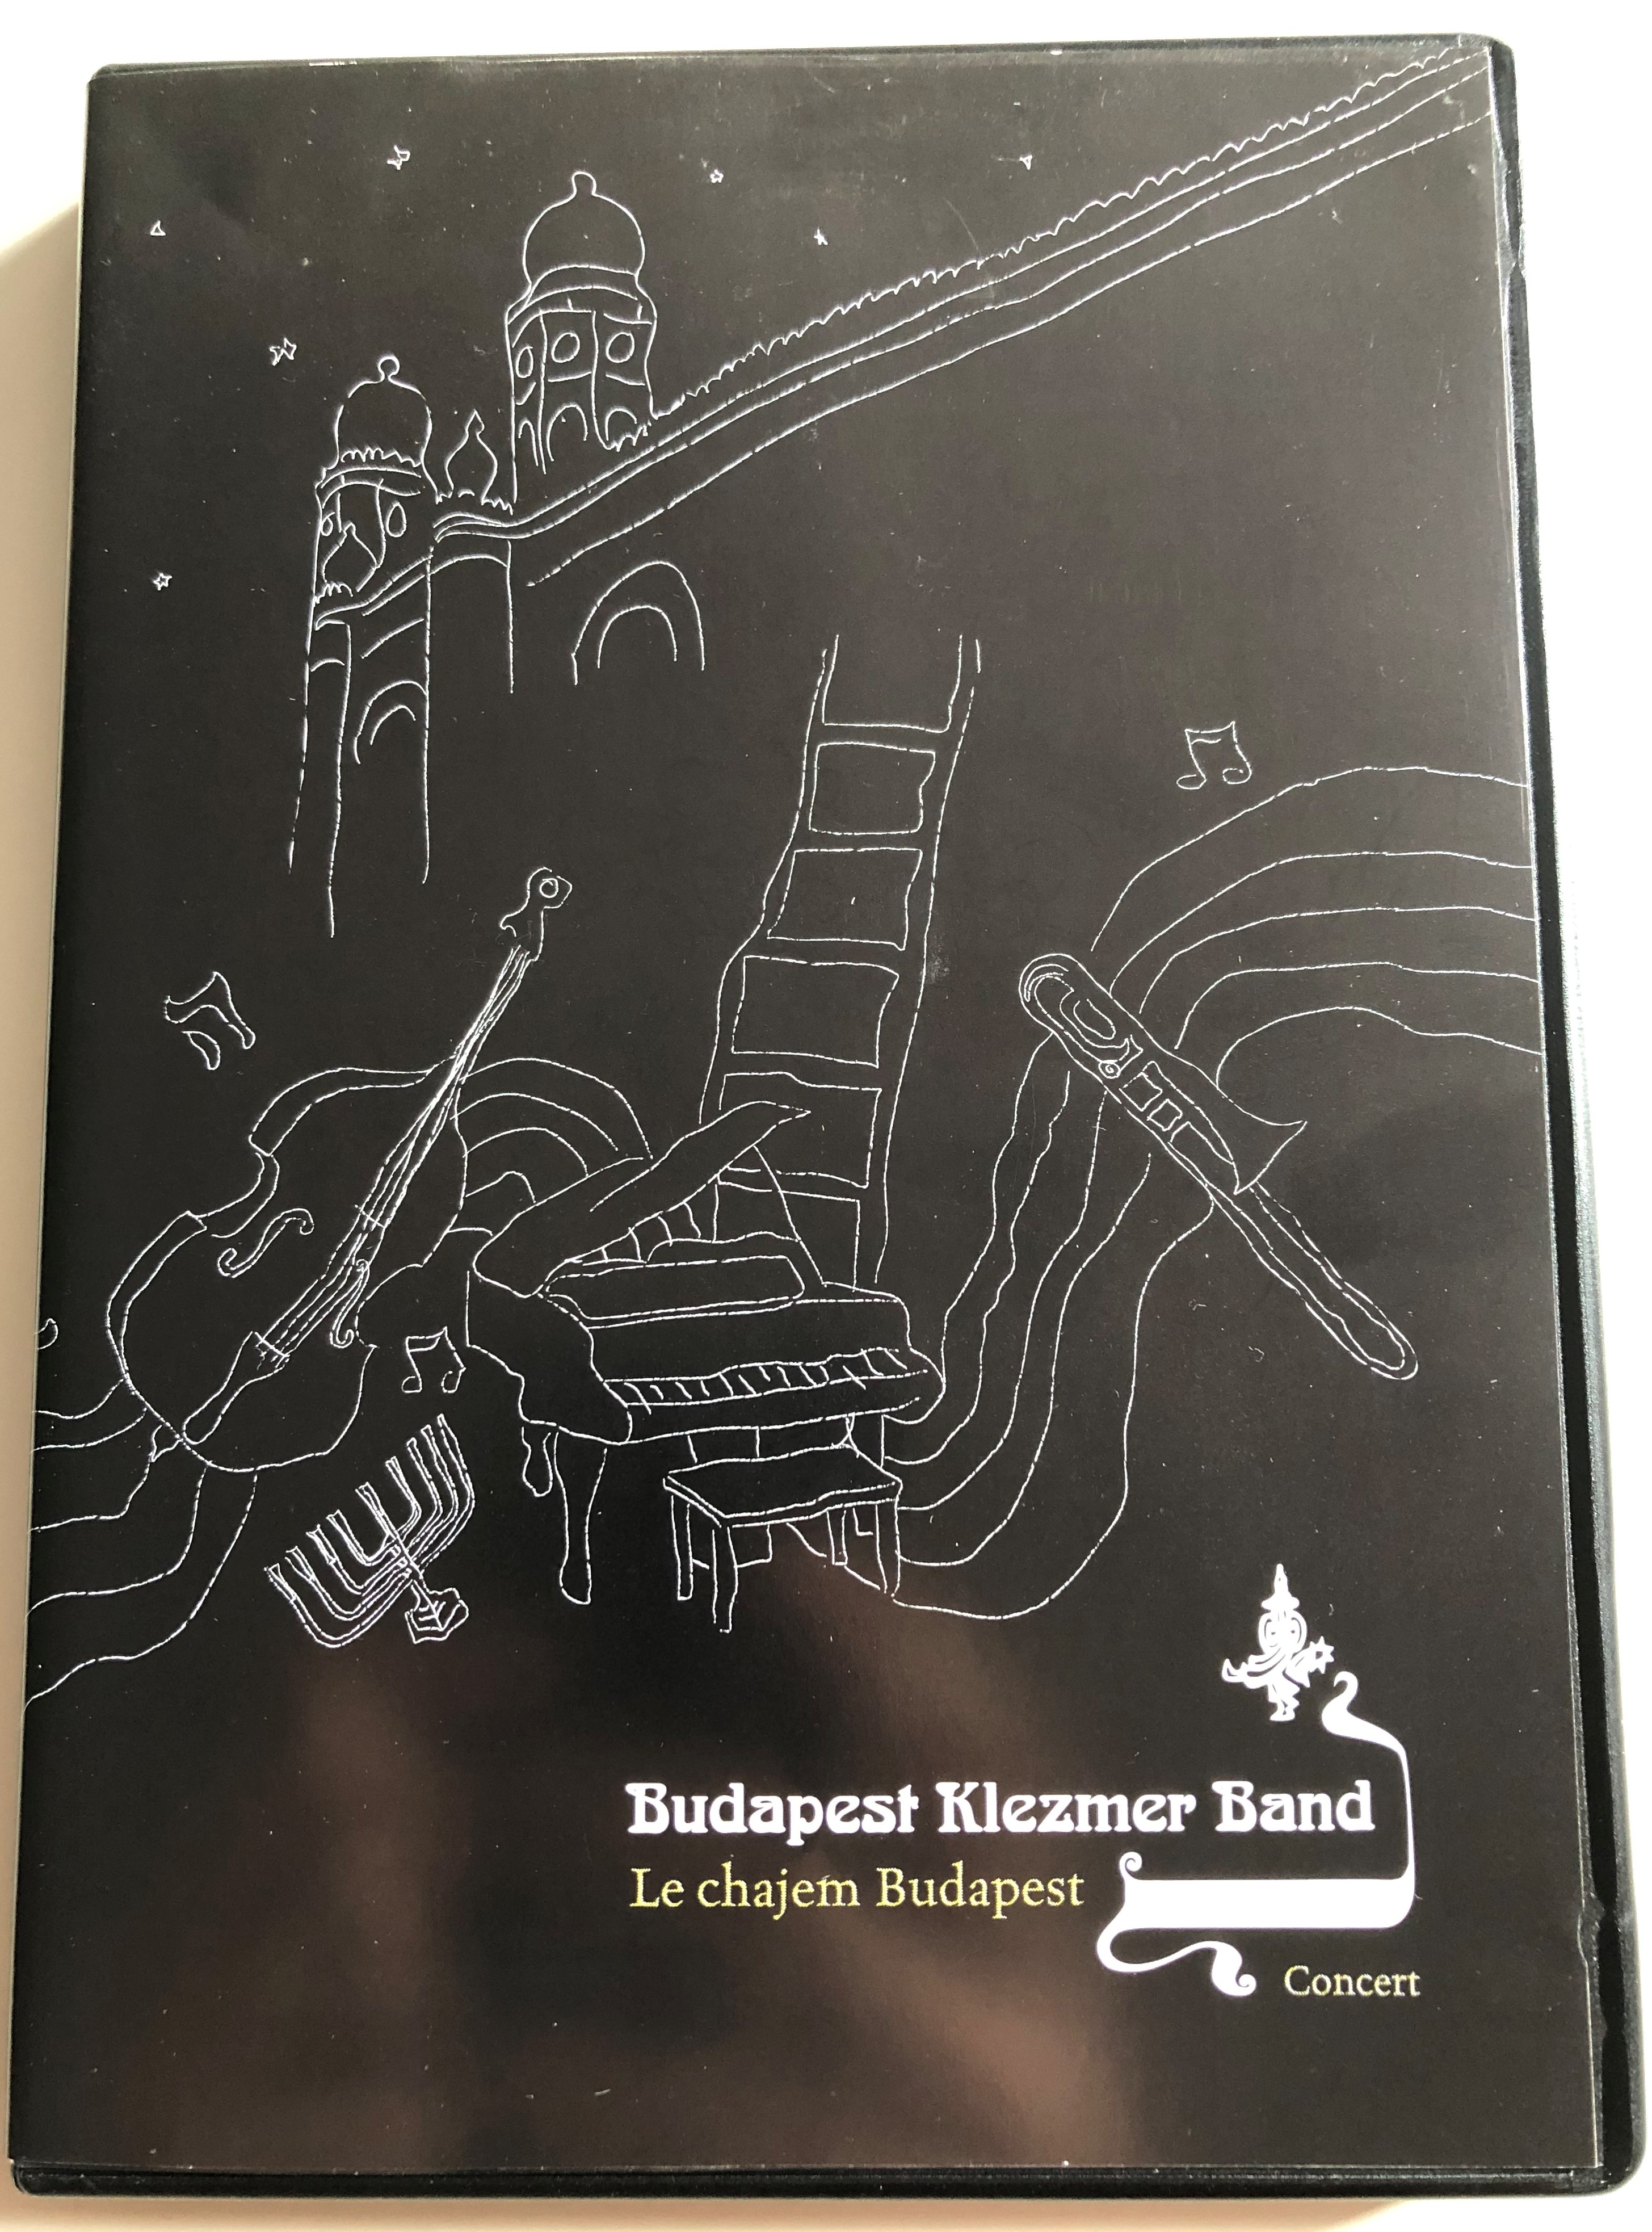 Le chajem Budapest - Budapest Klezmer Band DVD 2005  1.JPG